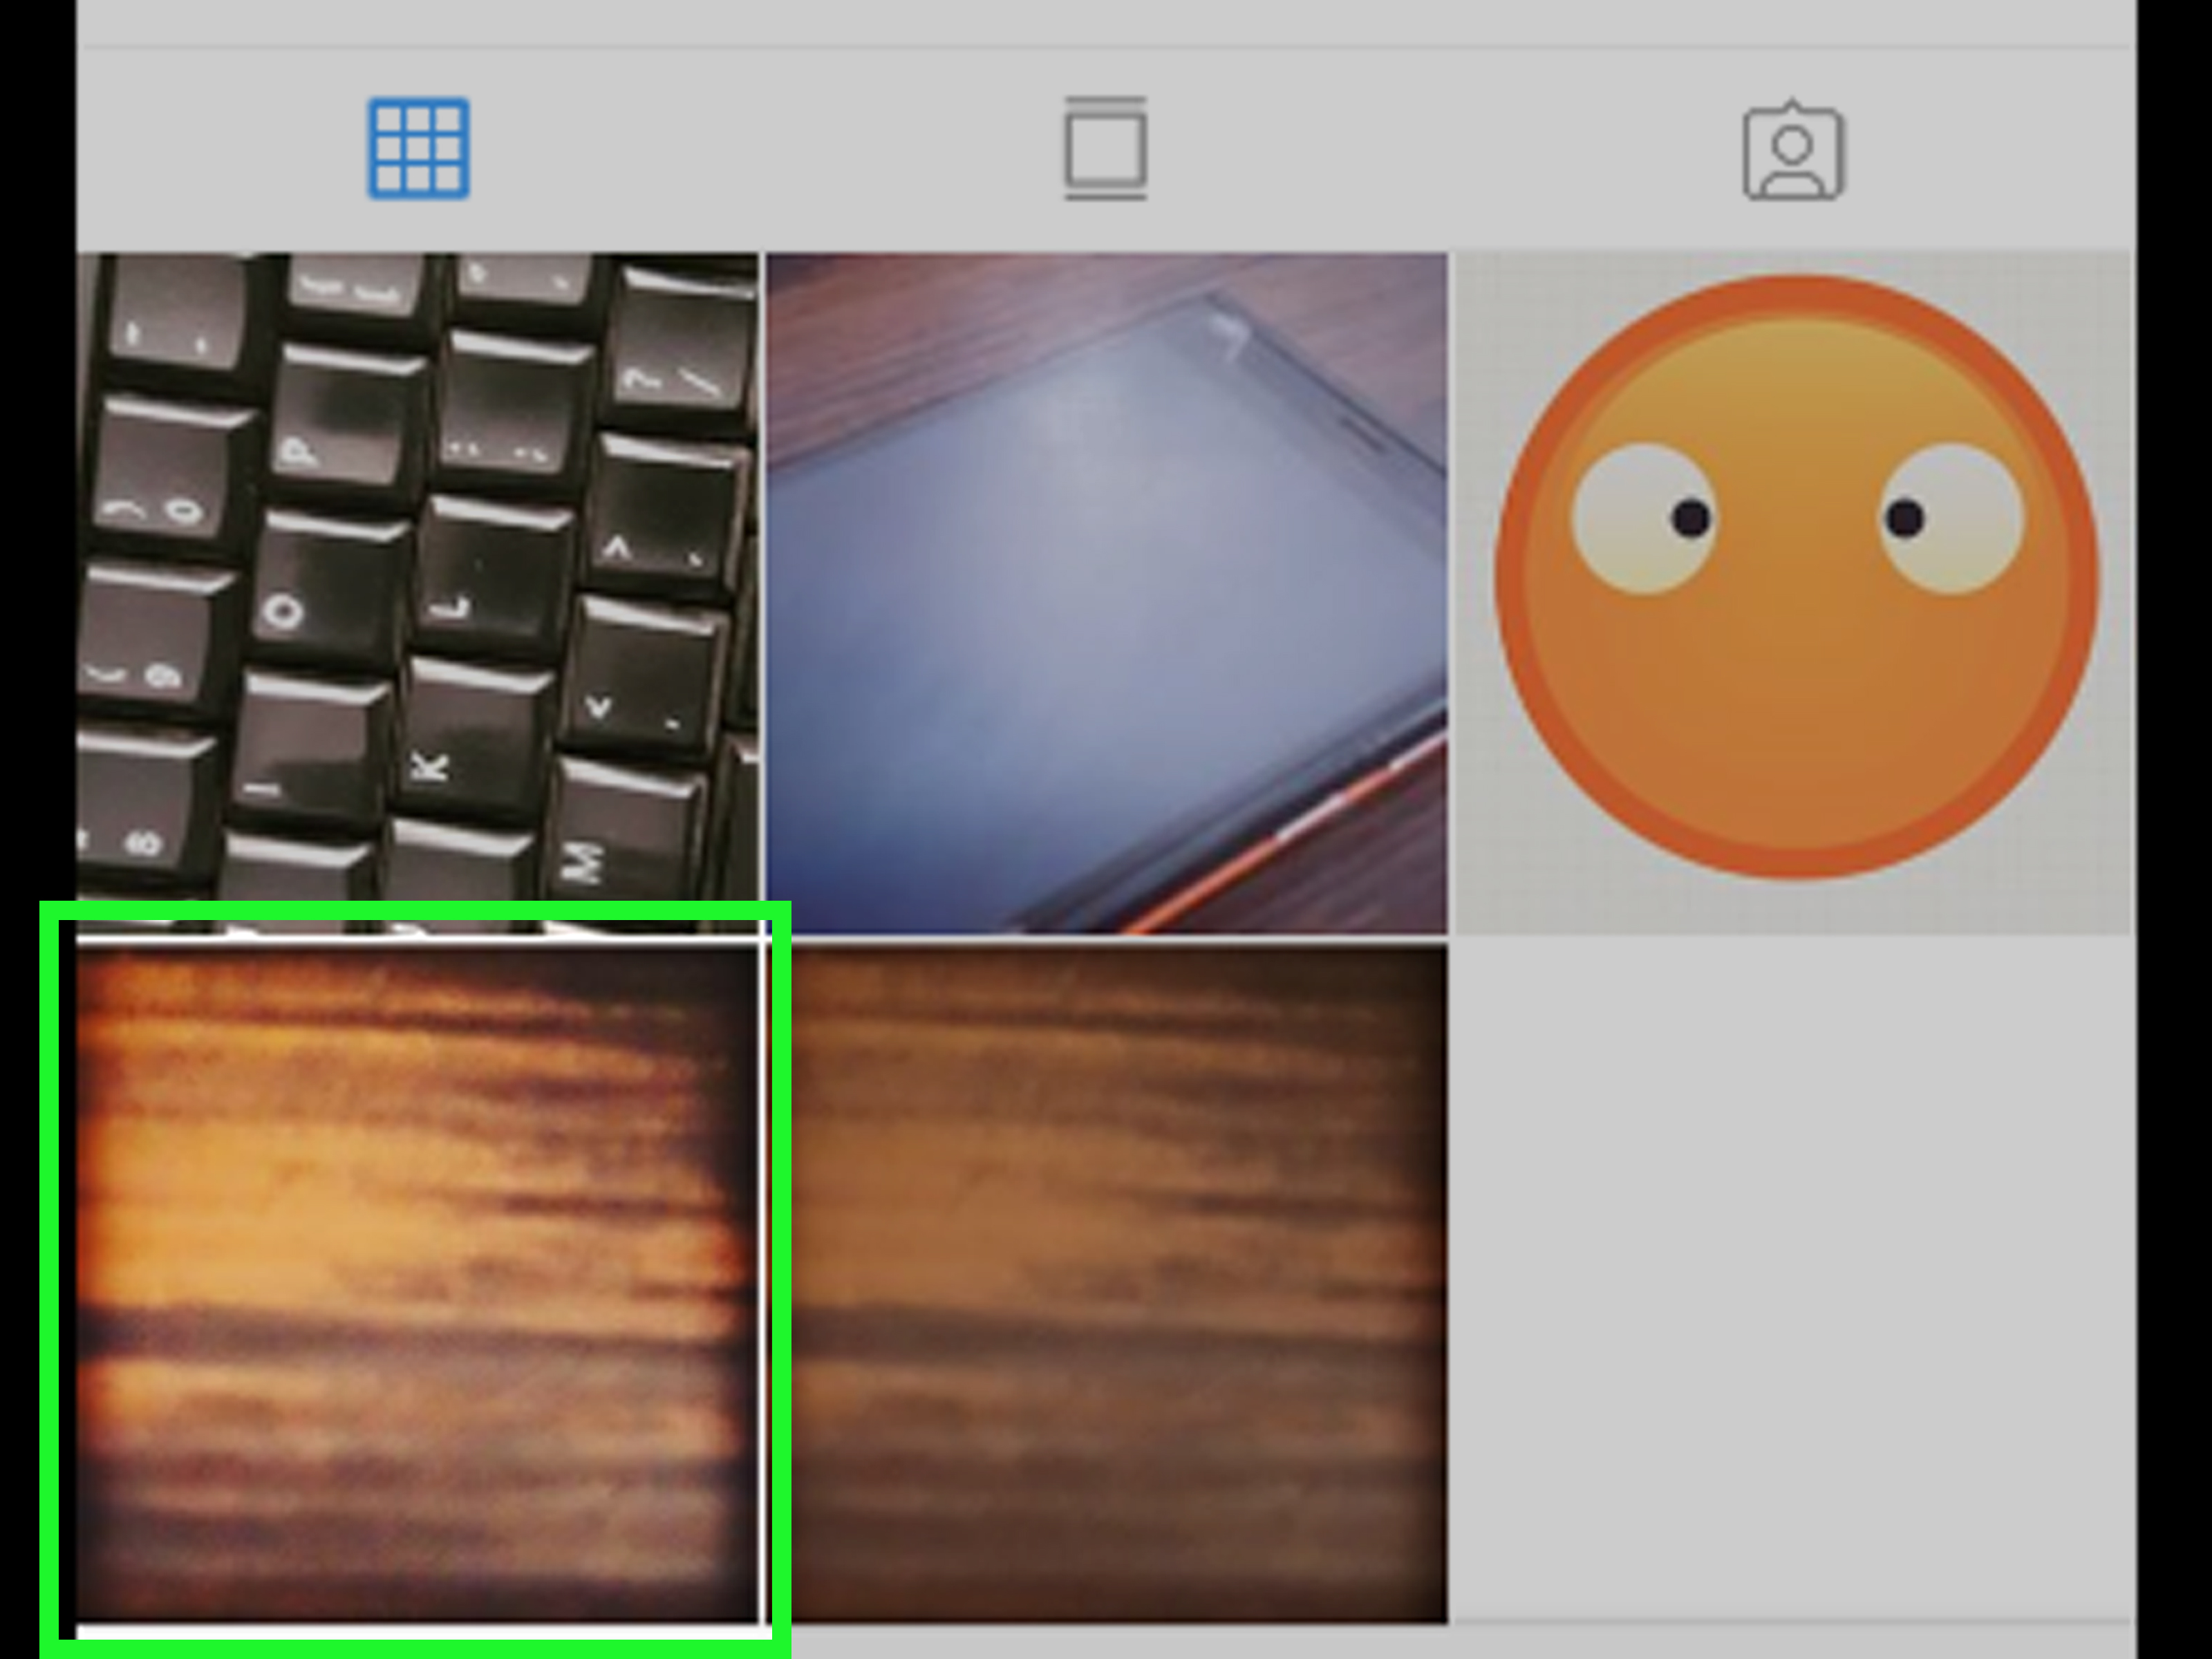 Cara Menghapus Foto Di Instagram Dari Pc. 3 Cara untuk Menghapus Beberapa Foto di Instagram dari Komputer